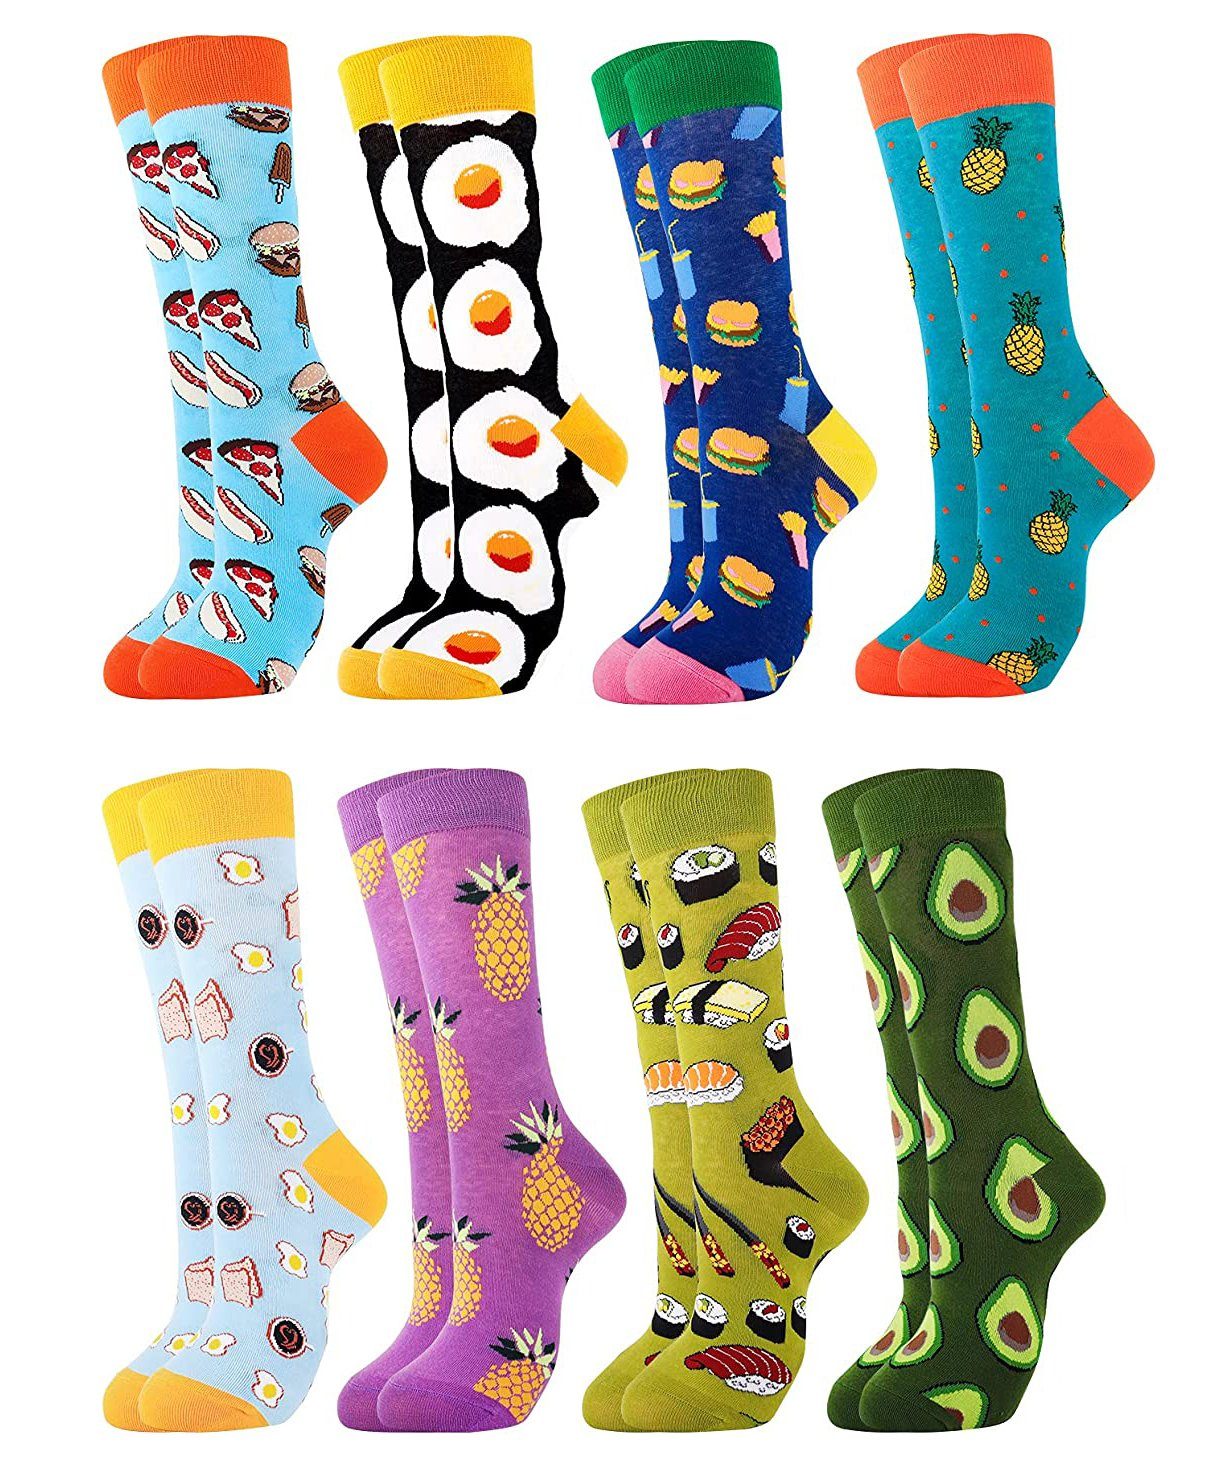 Alster Herz Freizeitsocken Lustige bunte Socken Sneakersocken, Unisex, Geschenk, A0375 (Set, 8-Paar) Baumwolle Motiv Socken, Größe 36-43